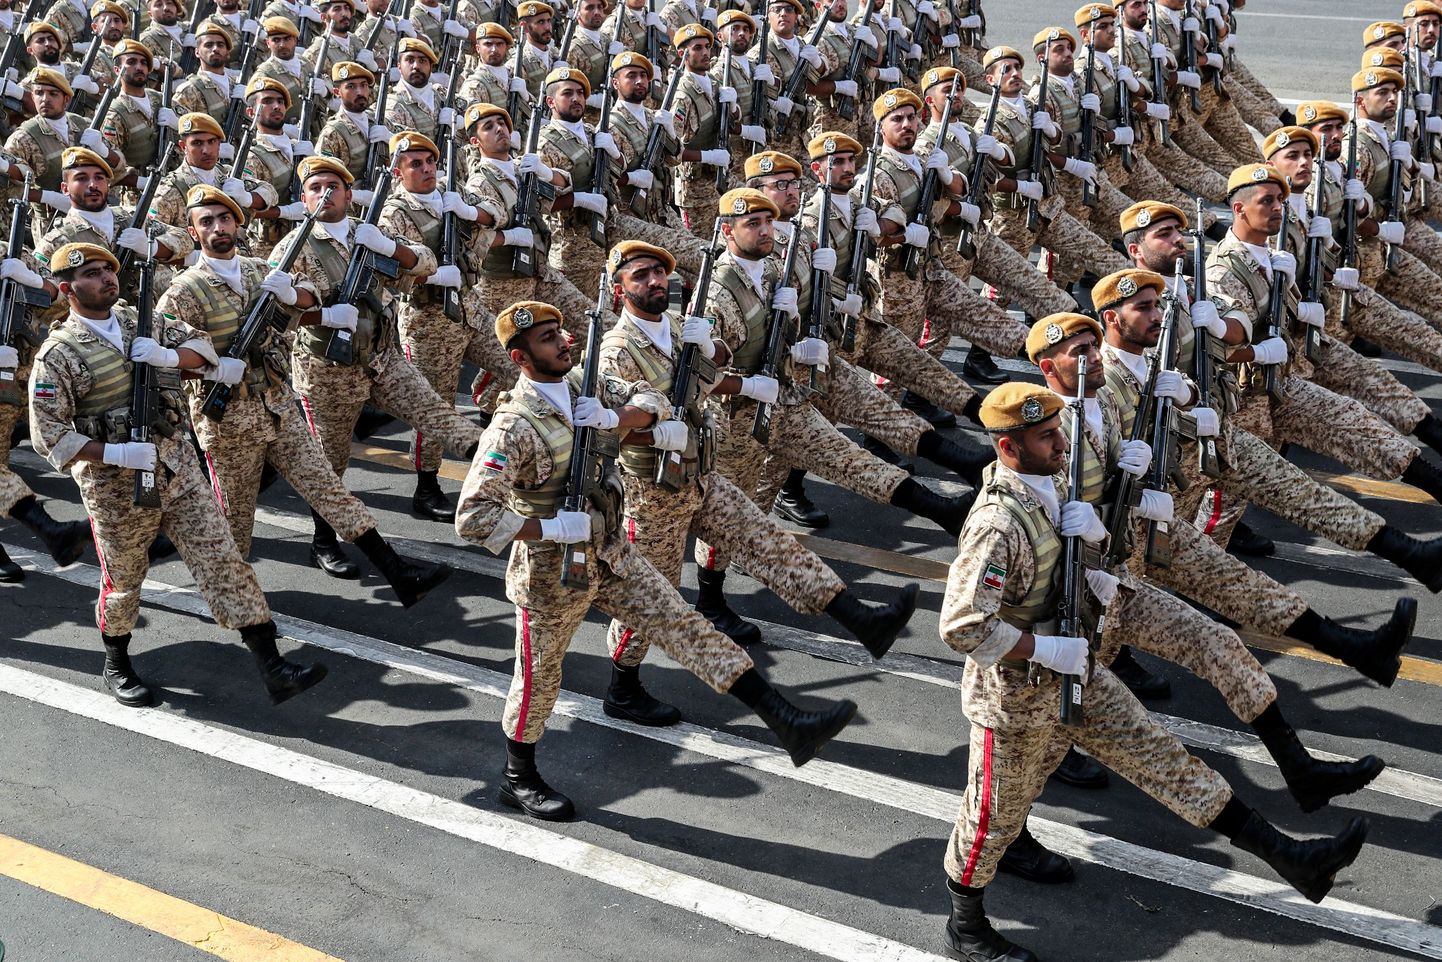 Iraani sõdurid Teheranis paraadil 22. september 2019.